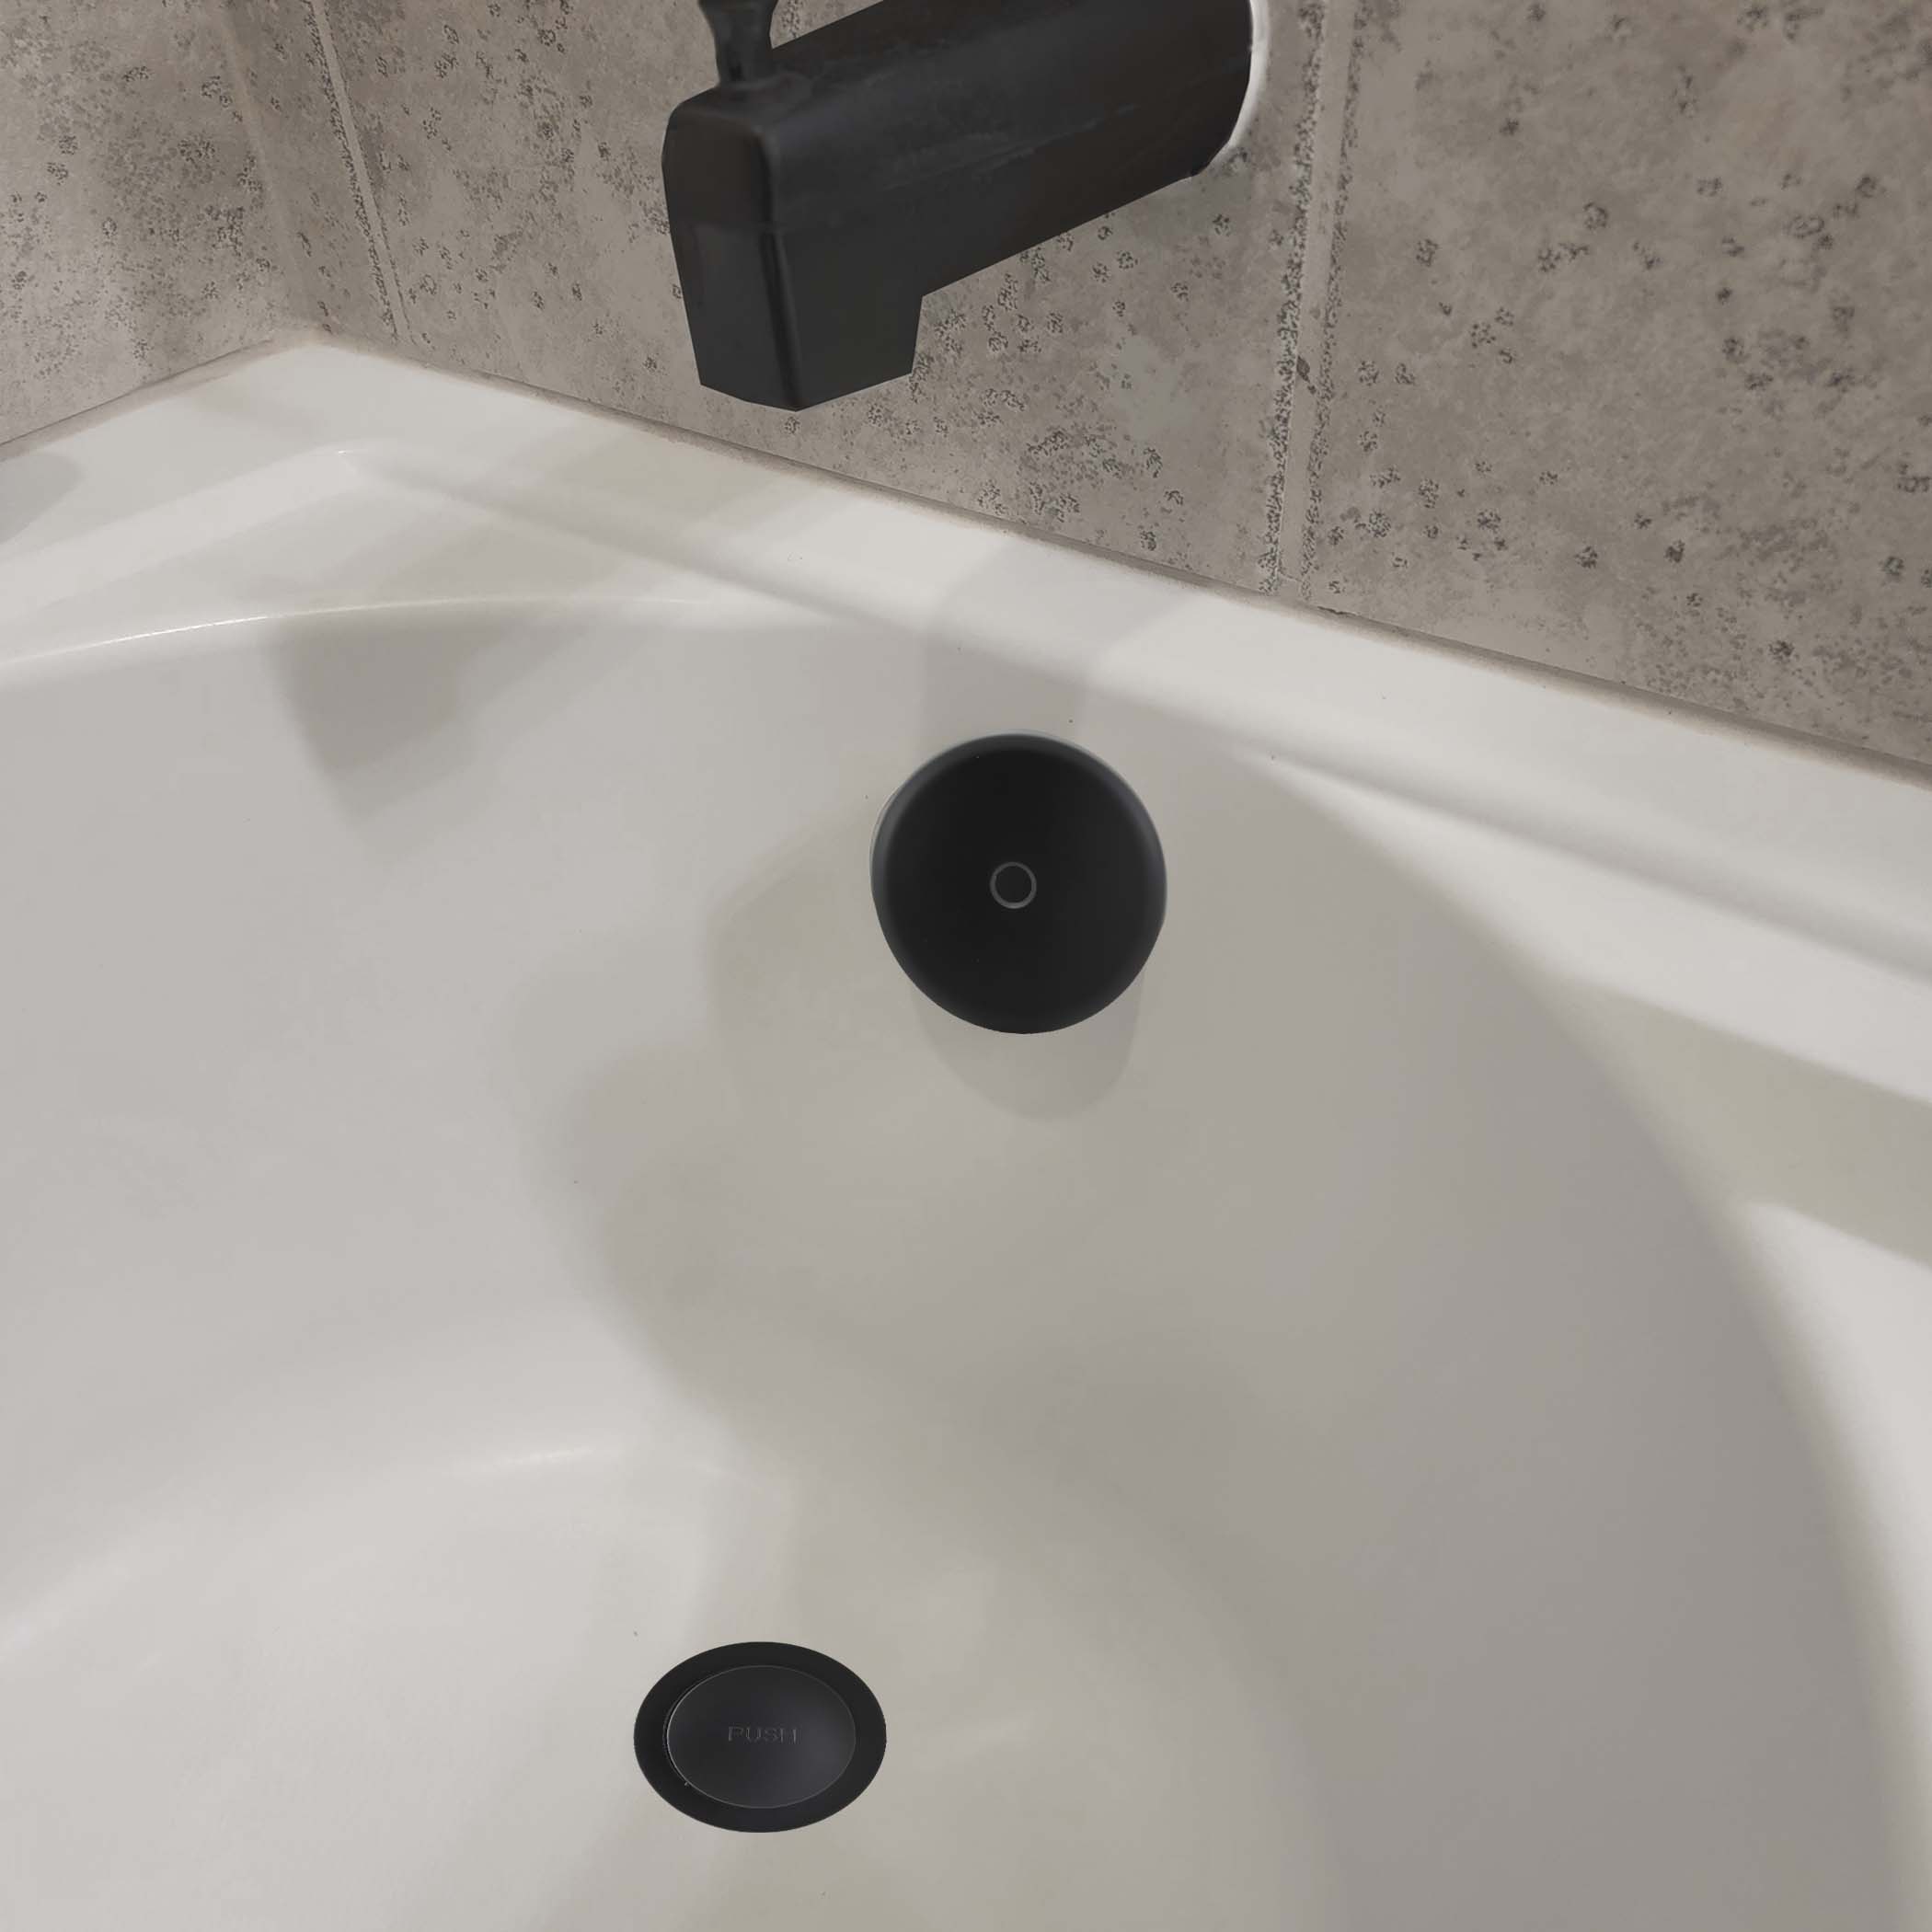 Trip Lever Bath Drain Trim Kit - Overflow Drain Cover for Bathroom Tub | BN